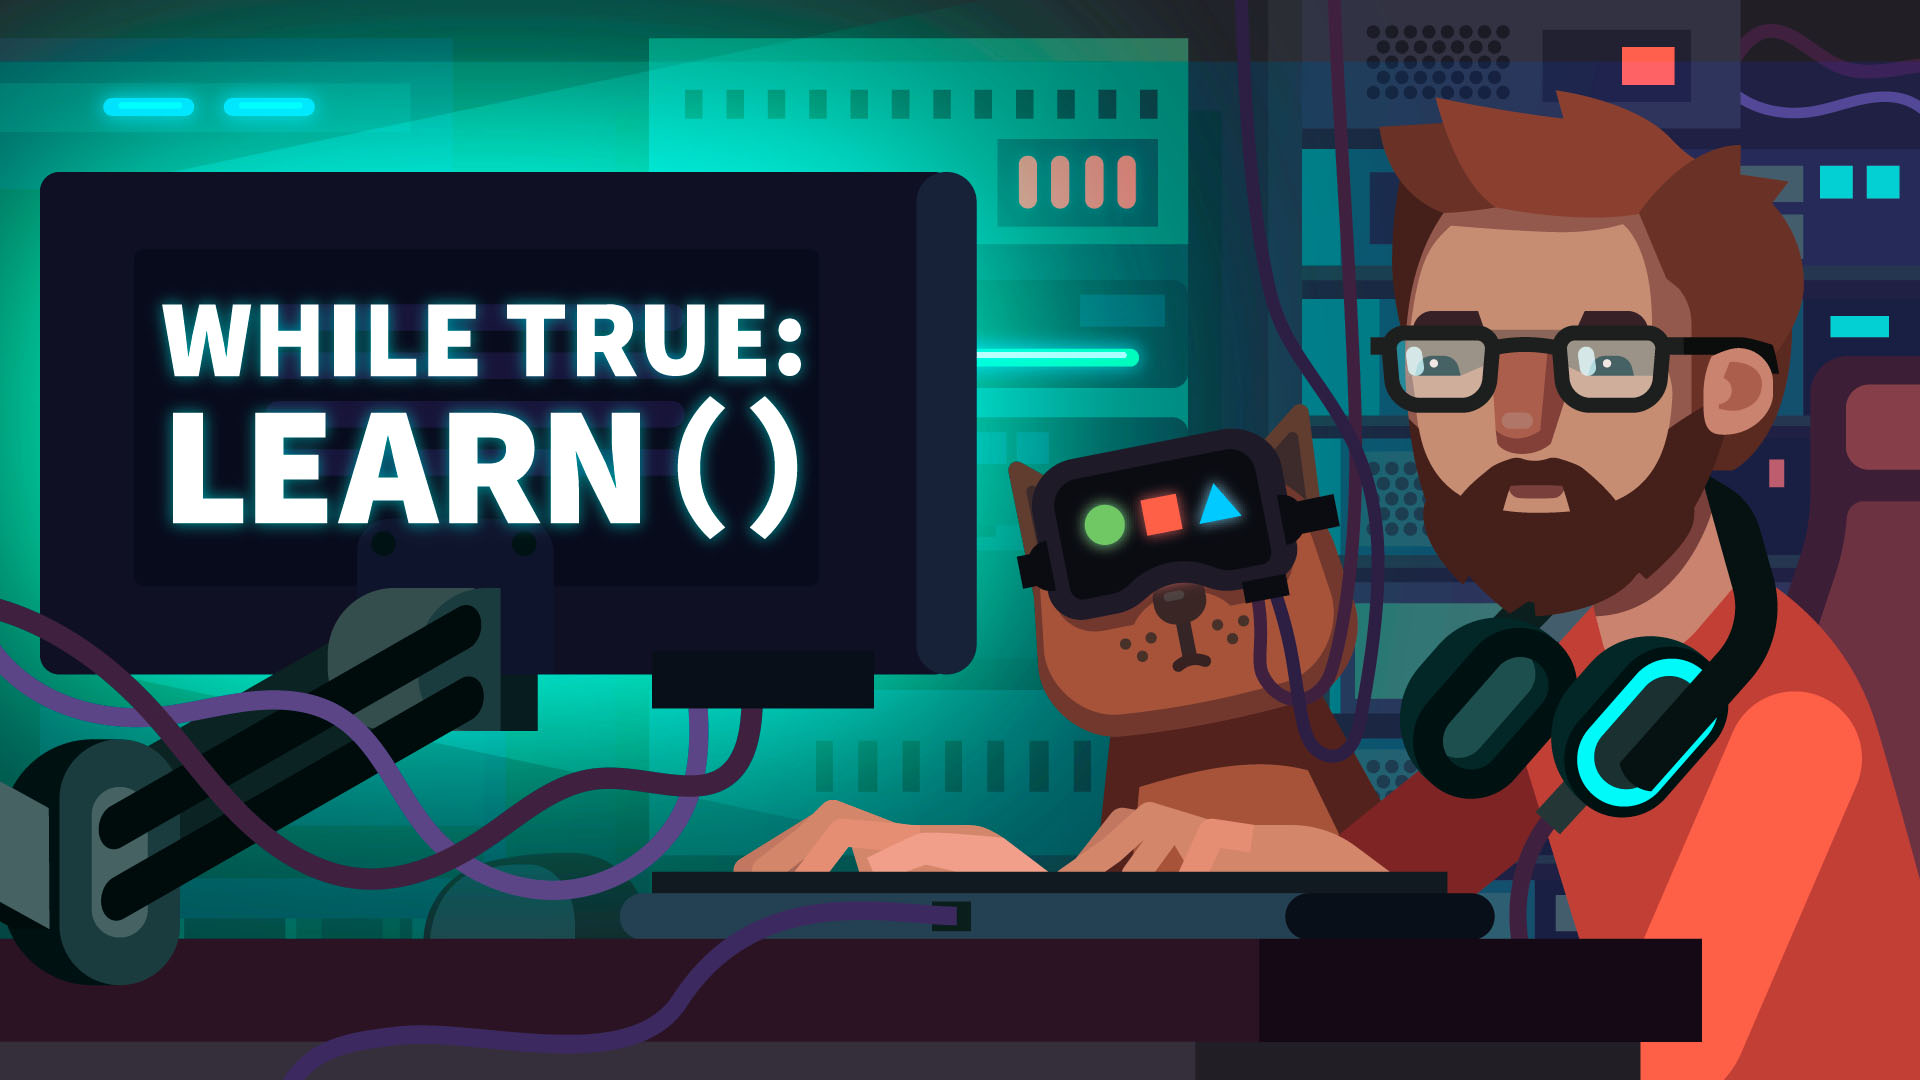 Игры утони. While true learn. While true игра. While learn игра. While true: learn() кот.